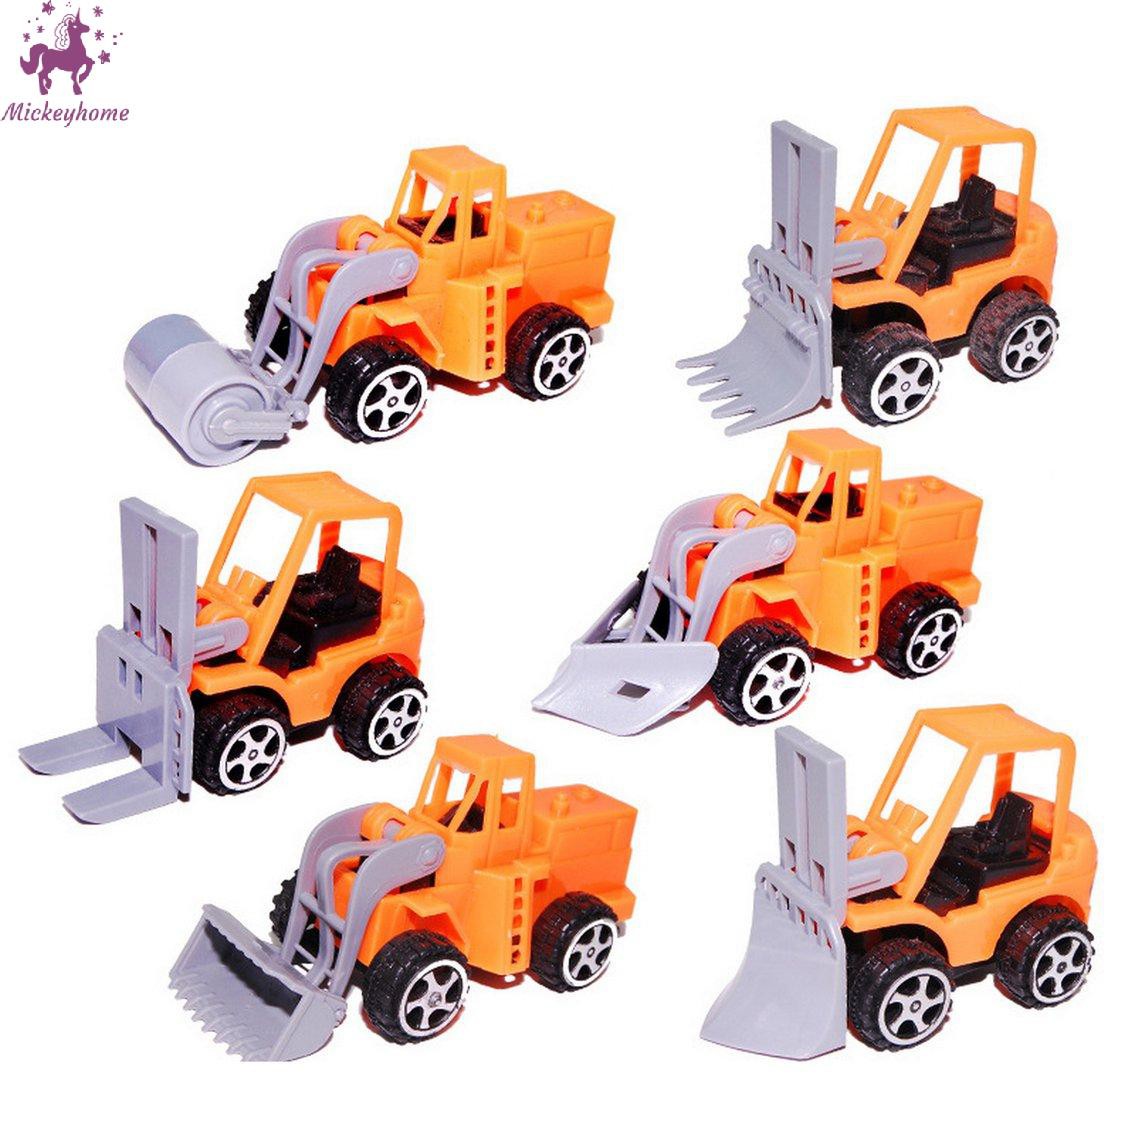 Đồ chơi xe xây dựng / xe đầu kéo / đồ chơi máy xúc / đồ chơi xây dựng bằng nhựa an toàn cho trẻ em, sắc nét, bền và đẹp / và loạt mô hình (vận chuyển ngẫu nhiên)